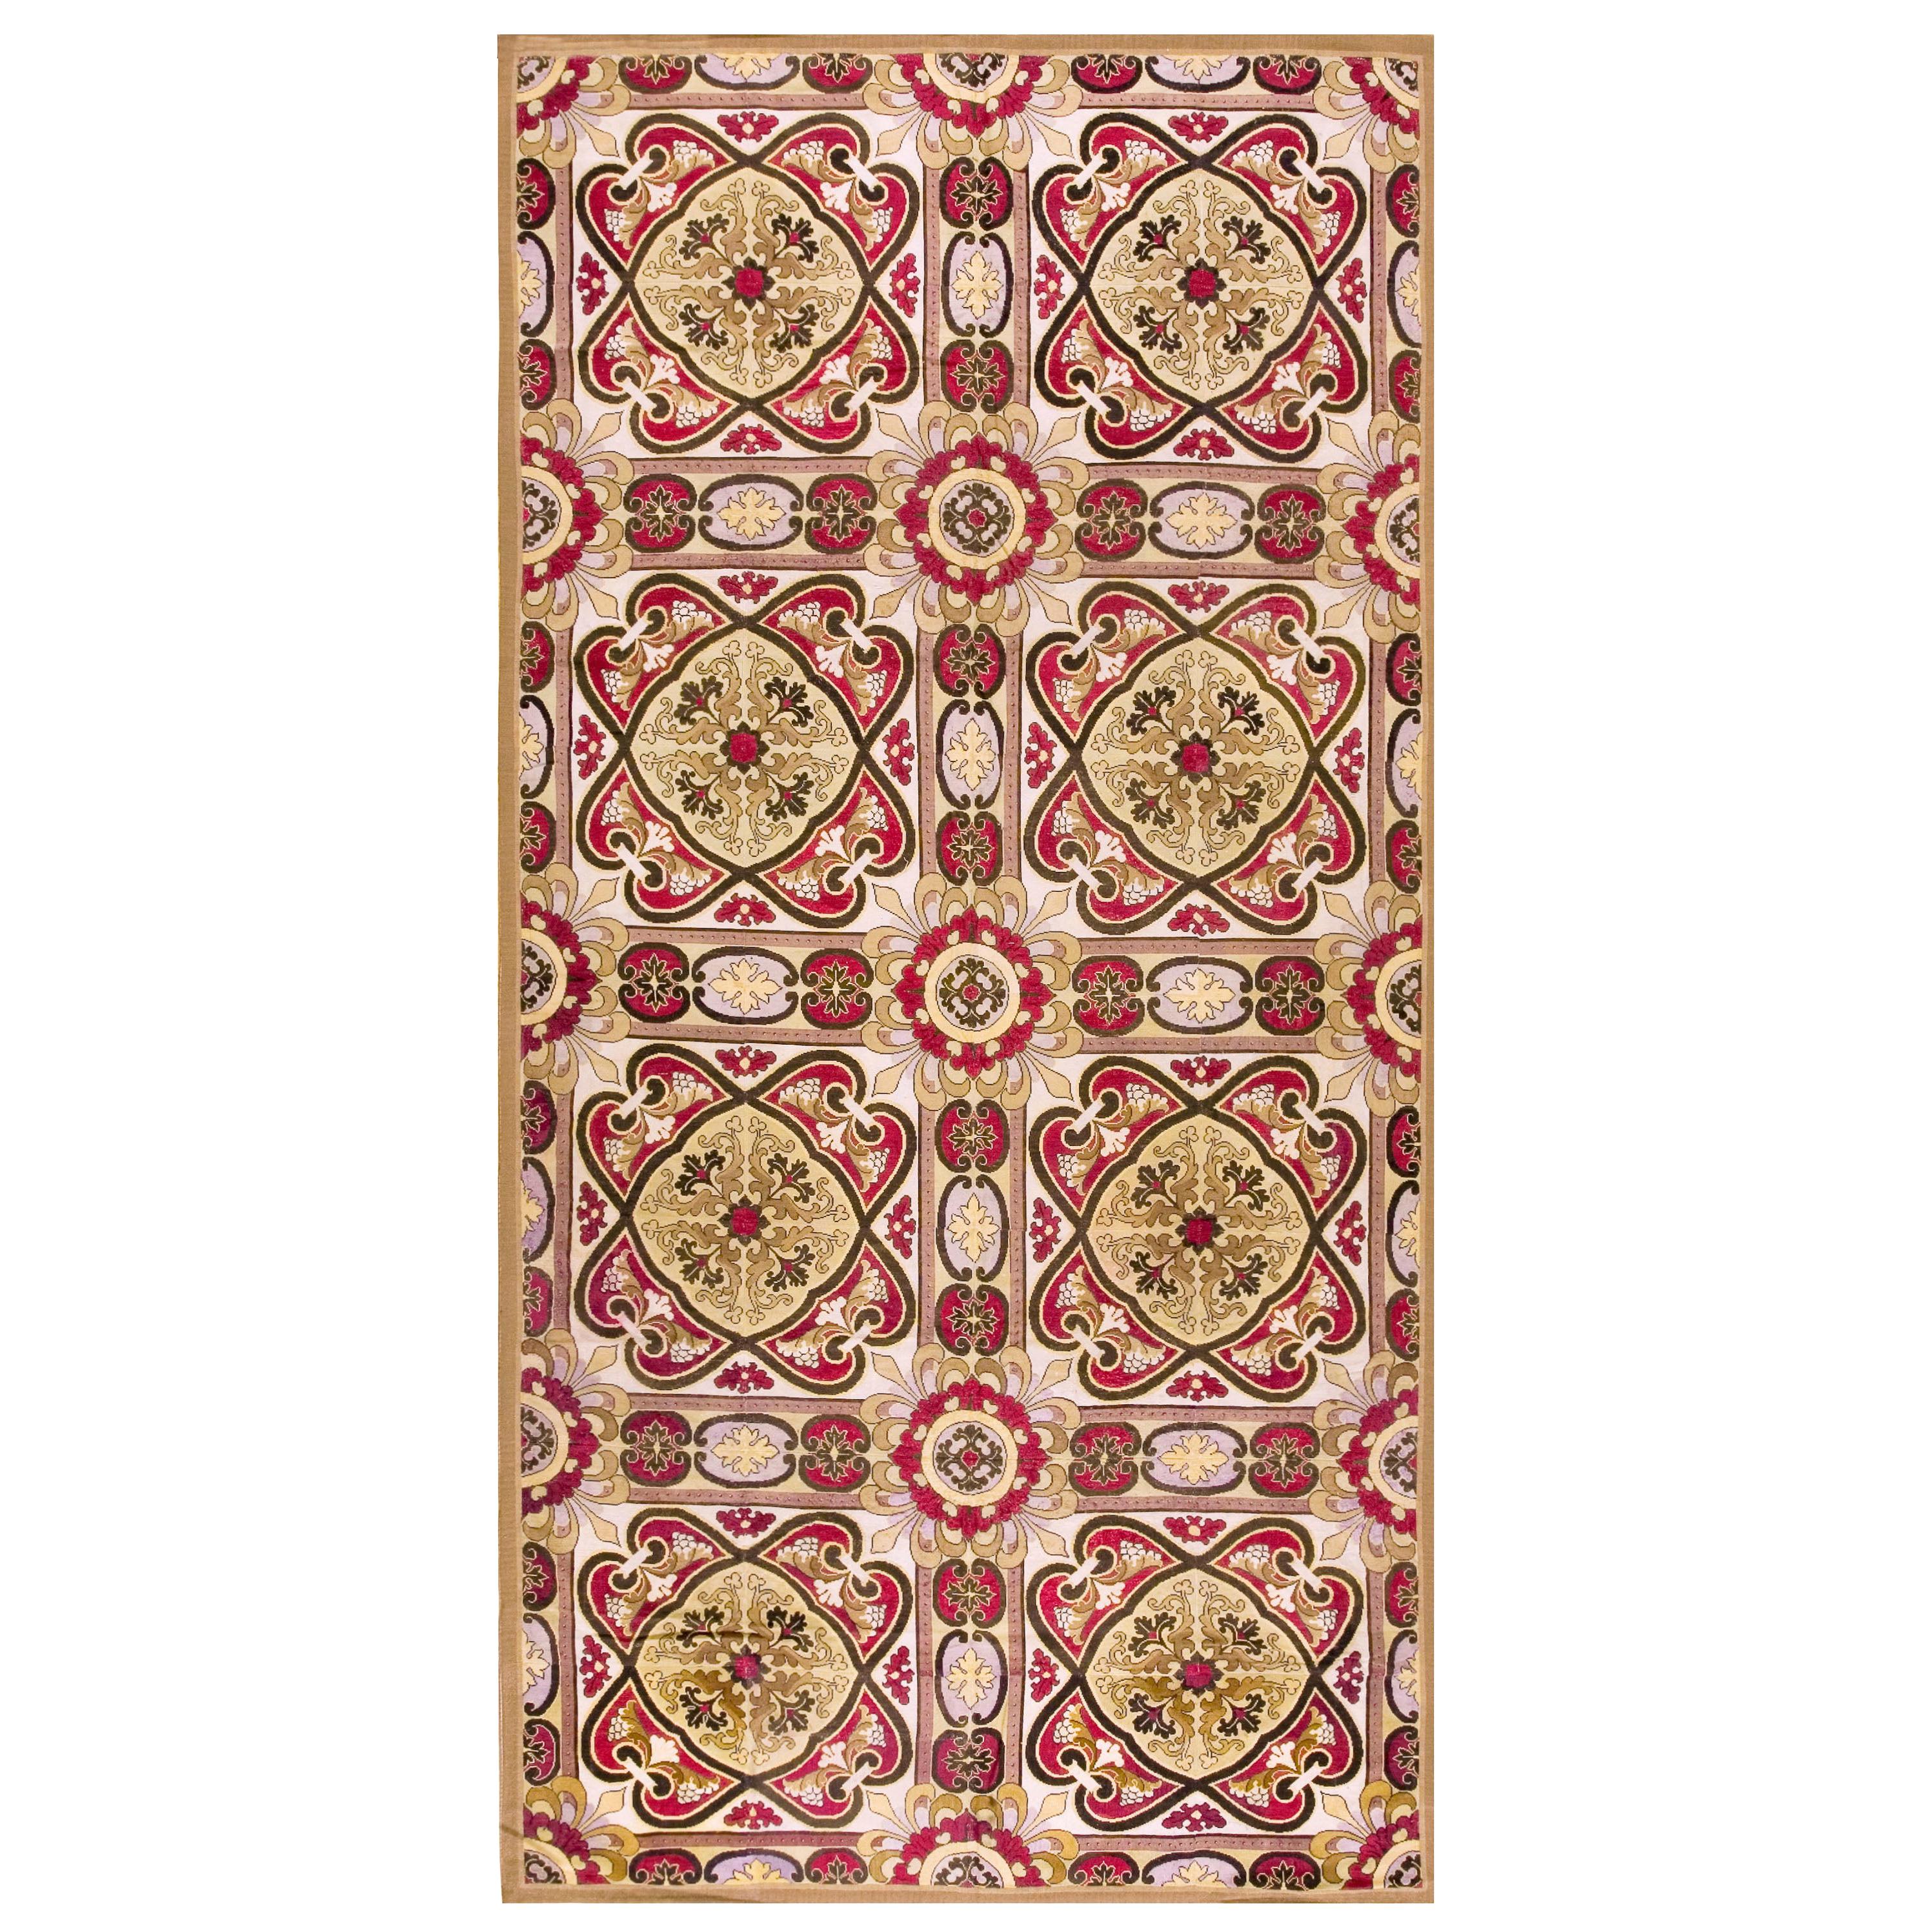 Englischer Nadelspitze-Teppich aus dem 19. Jahrhundert ( 6'4" x 13'6" - 193 x 412 )